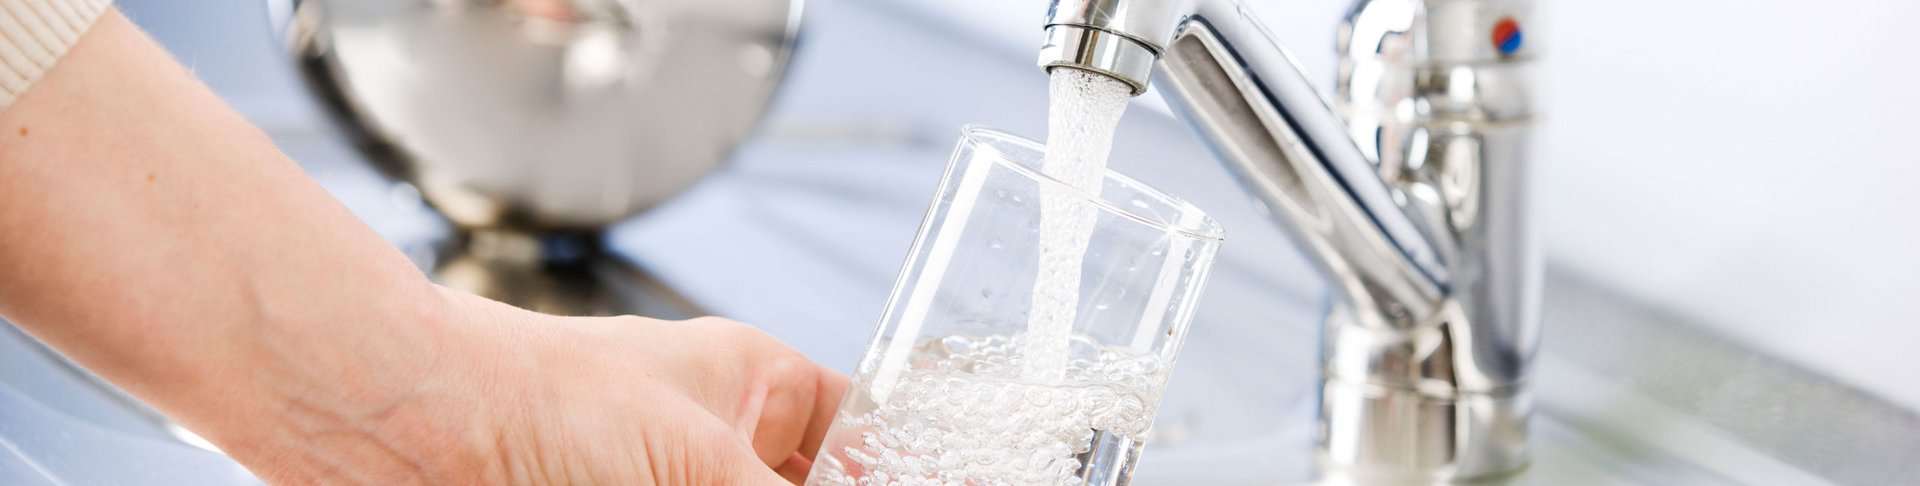 Person lässt sich Leitungswasser aus dem Wasserhahn in ein Glas ein.